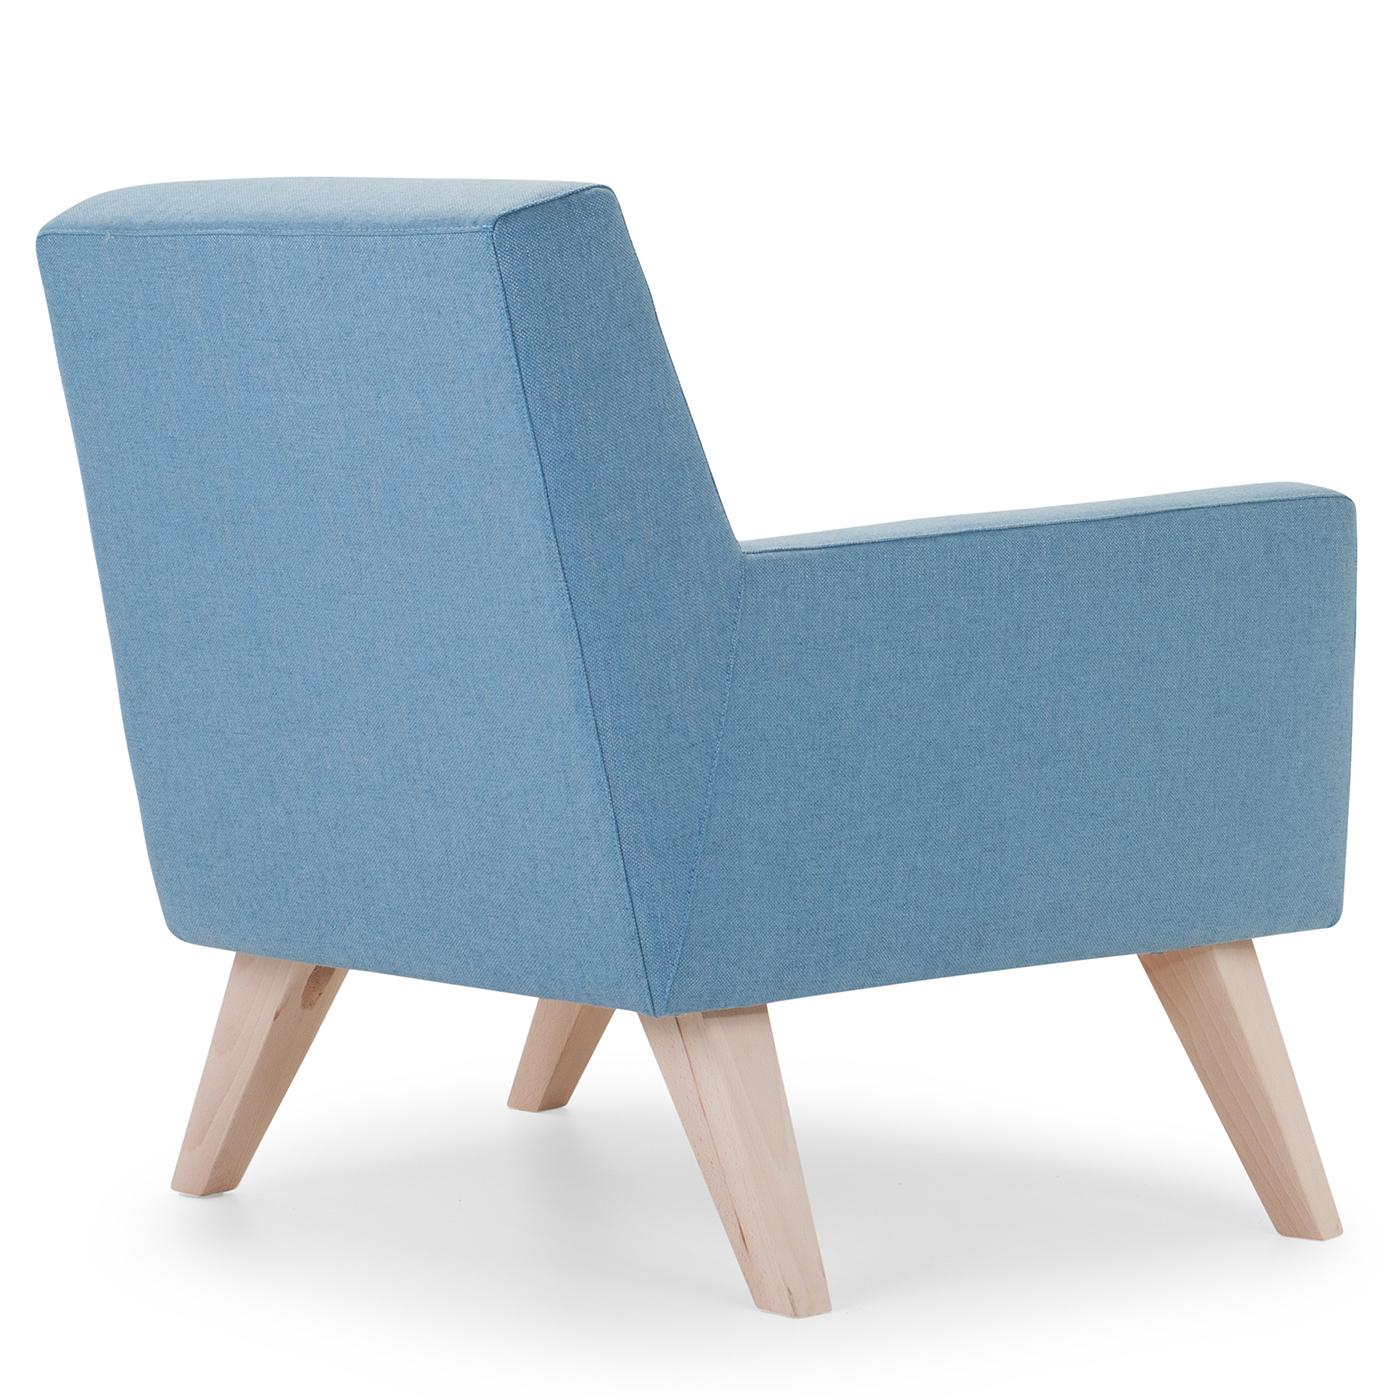 Italian Boston Light Blue Armchair with Wooden Feet